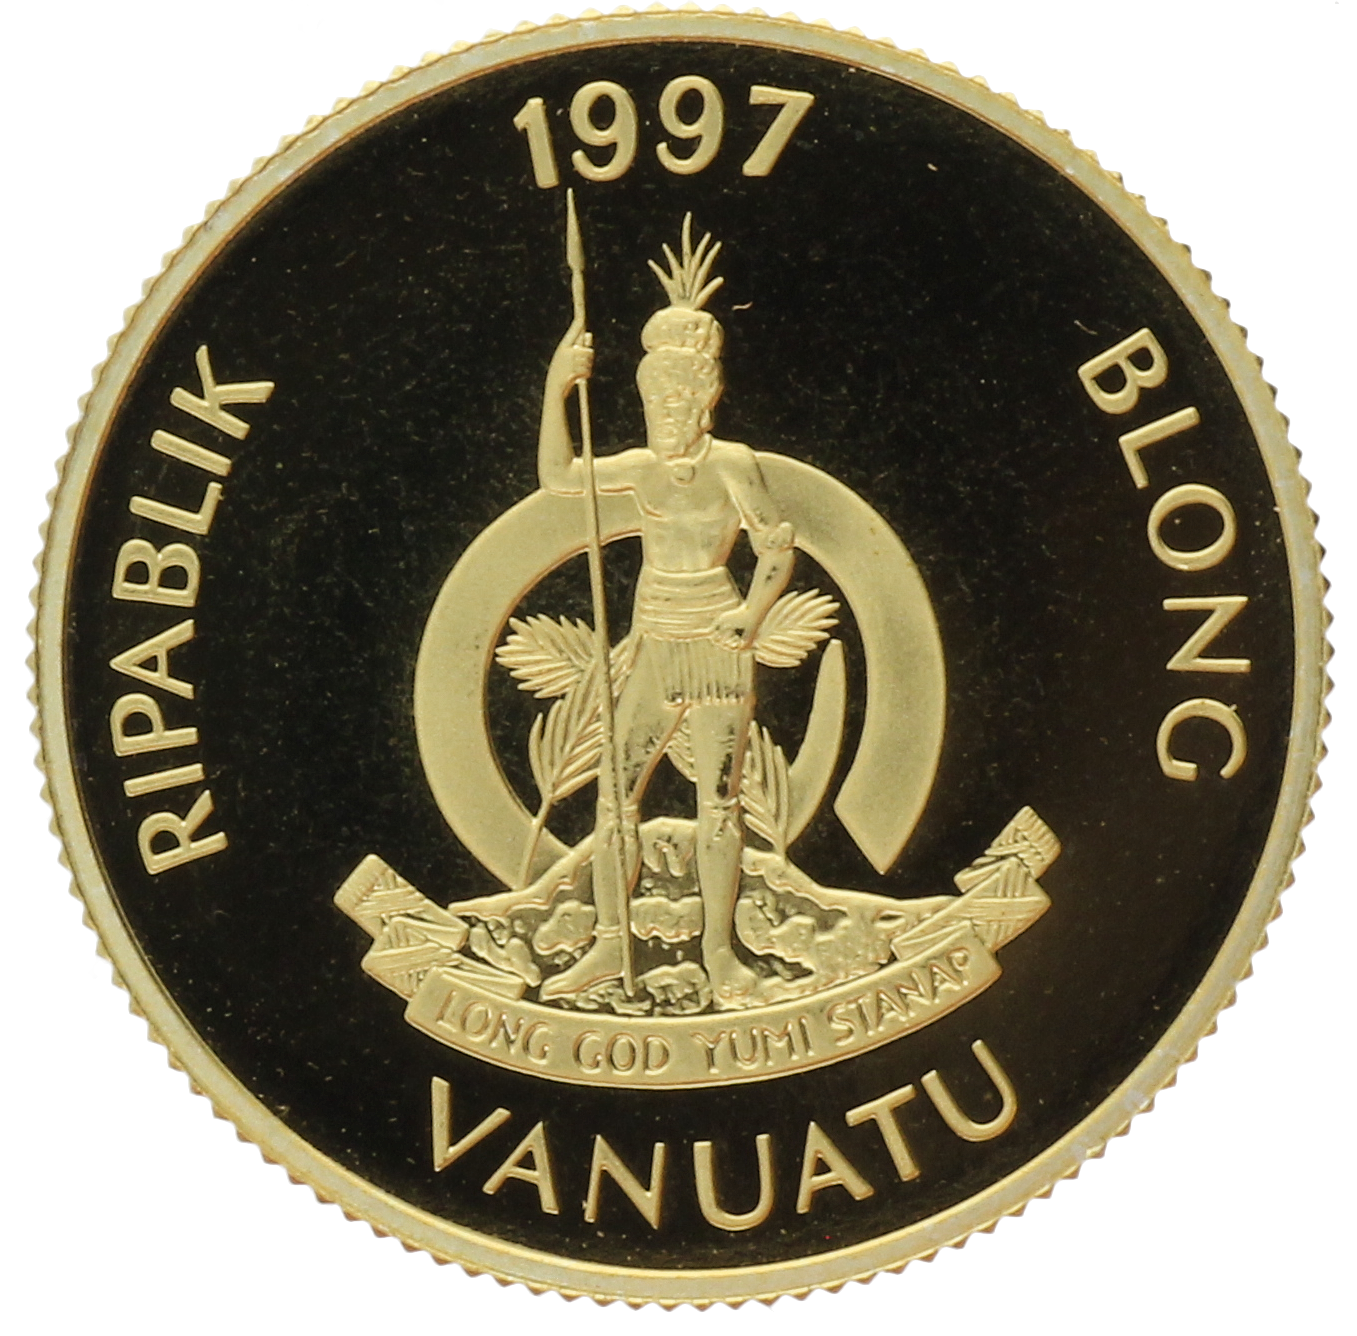 Vanuatu - 100 Vatu - 1997 - Birth of Prince William